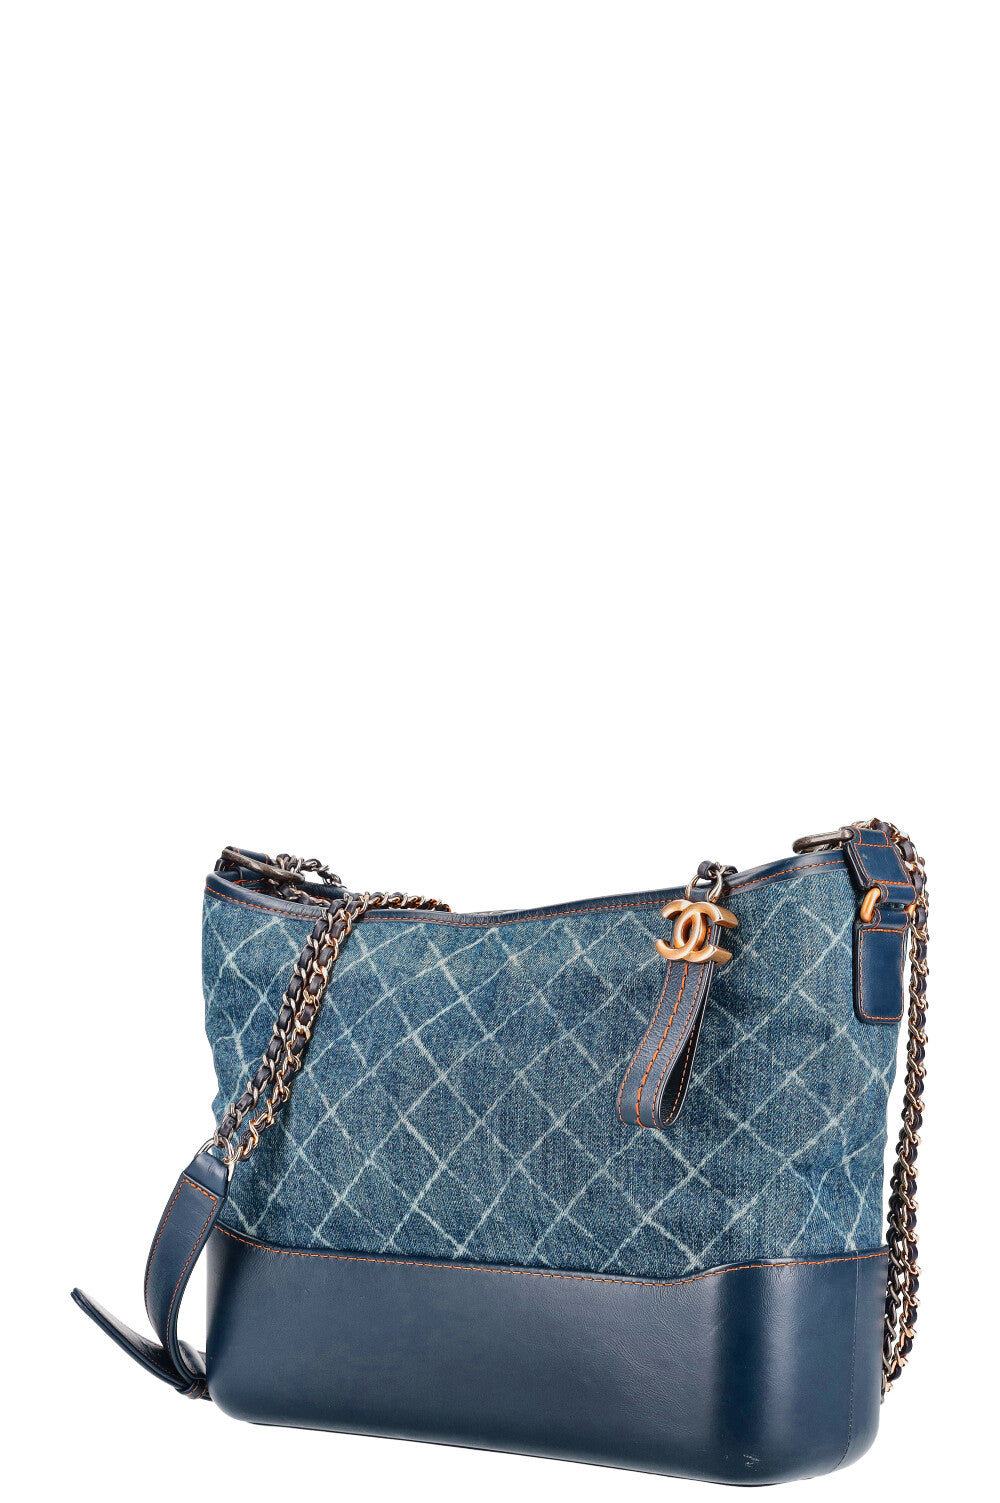 Chanel Gabrielle Small Denim Blue Crossbody Bag! - New Neu